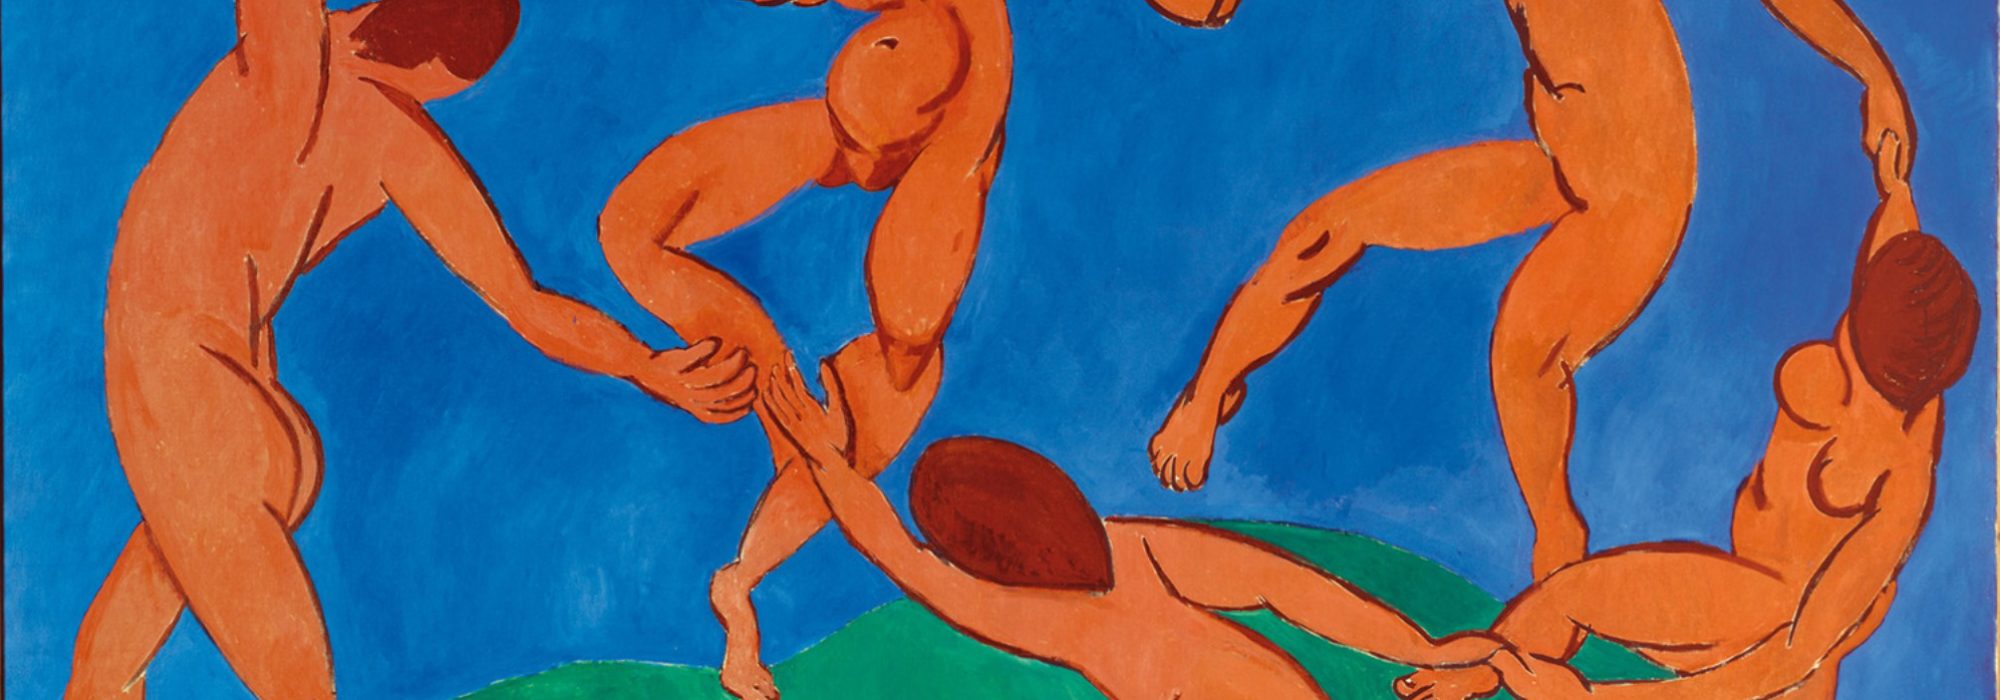 Imagem: A Dança (Matisse)